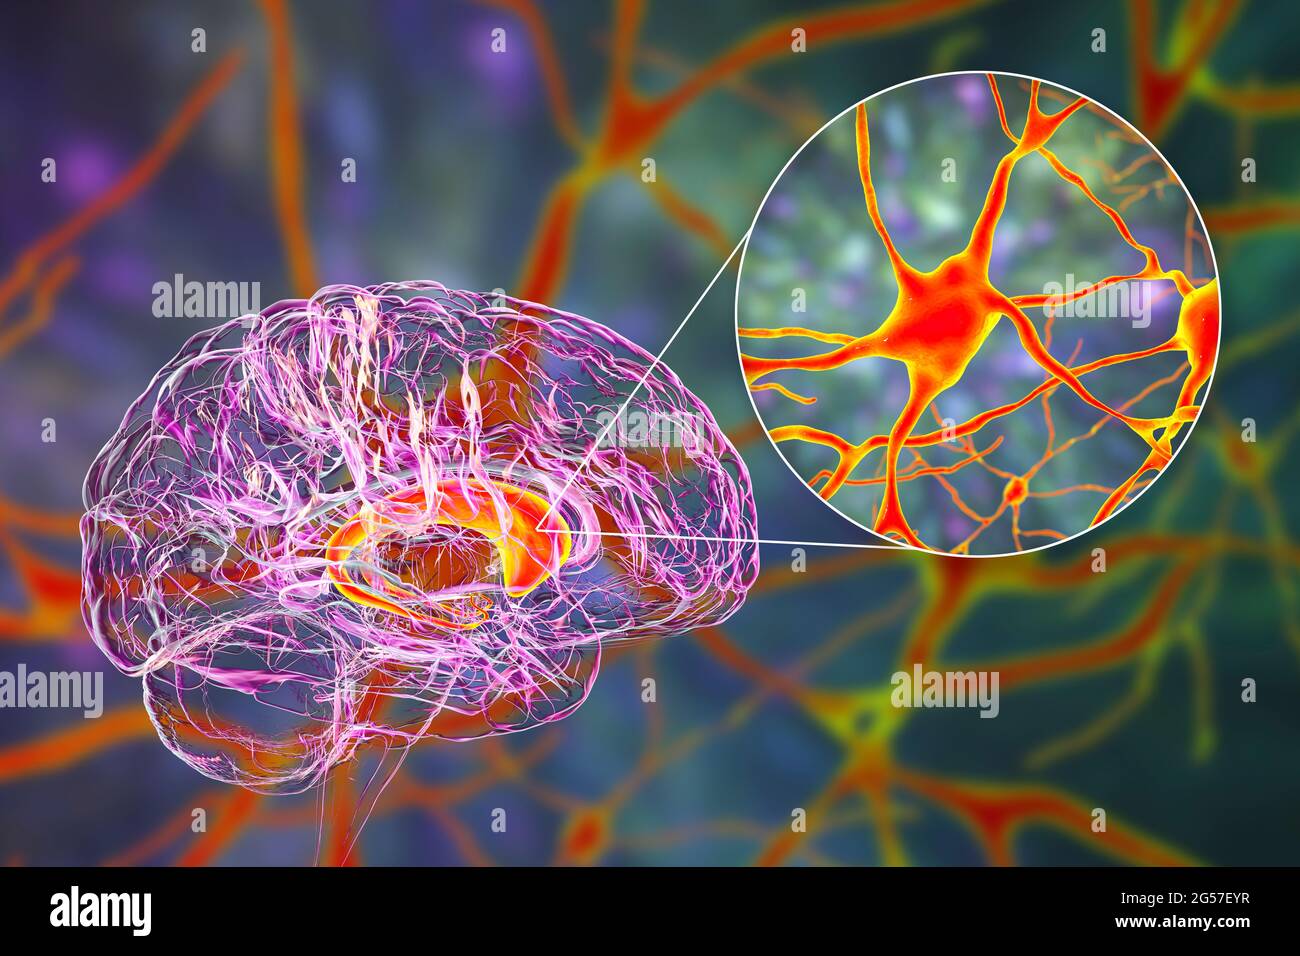 Noyaux caudé mis en évidence dans le cerveau humain, illustration Banque D'Images